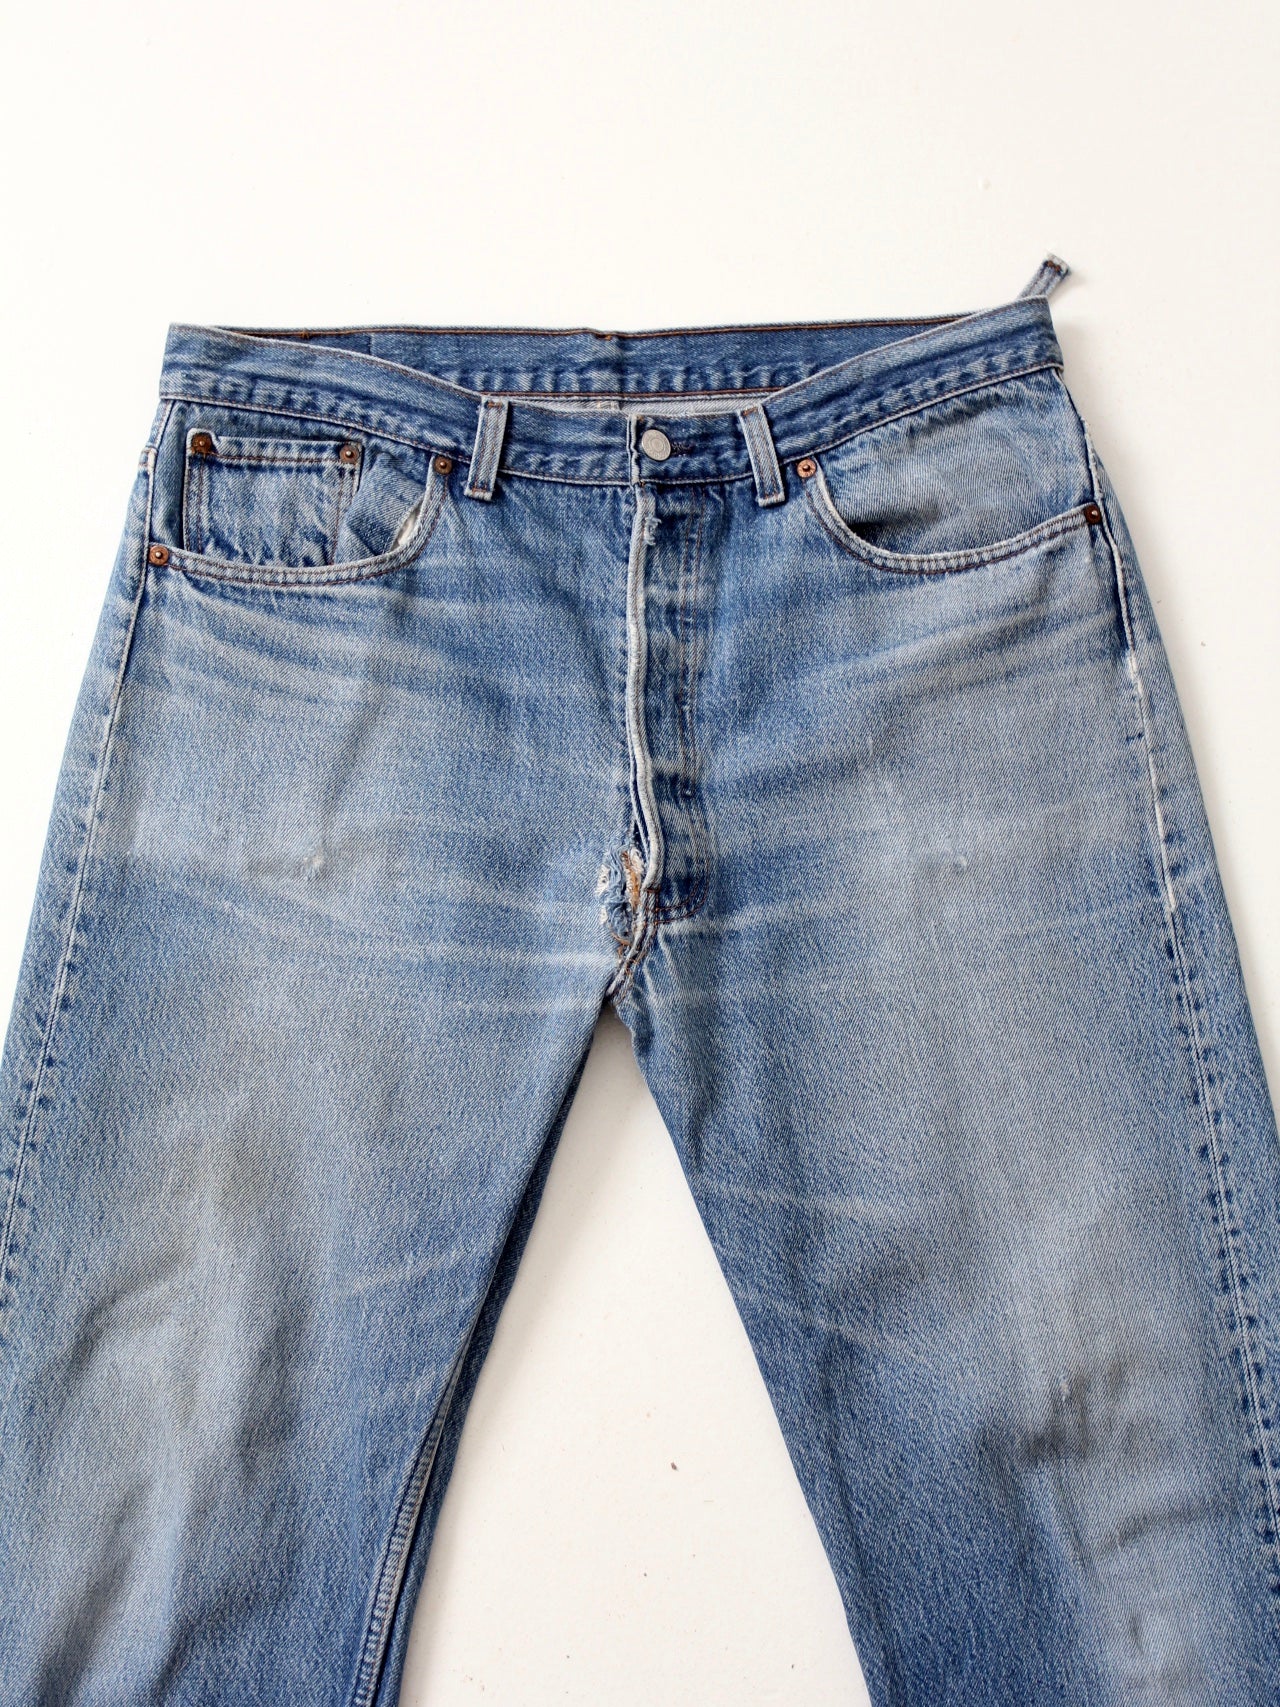 vintage Levis 501 jeans, 36 x 28 – 86 Vintage